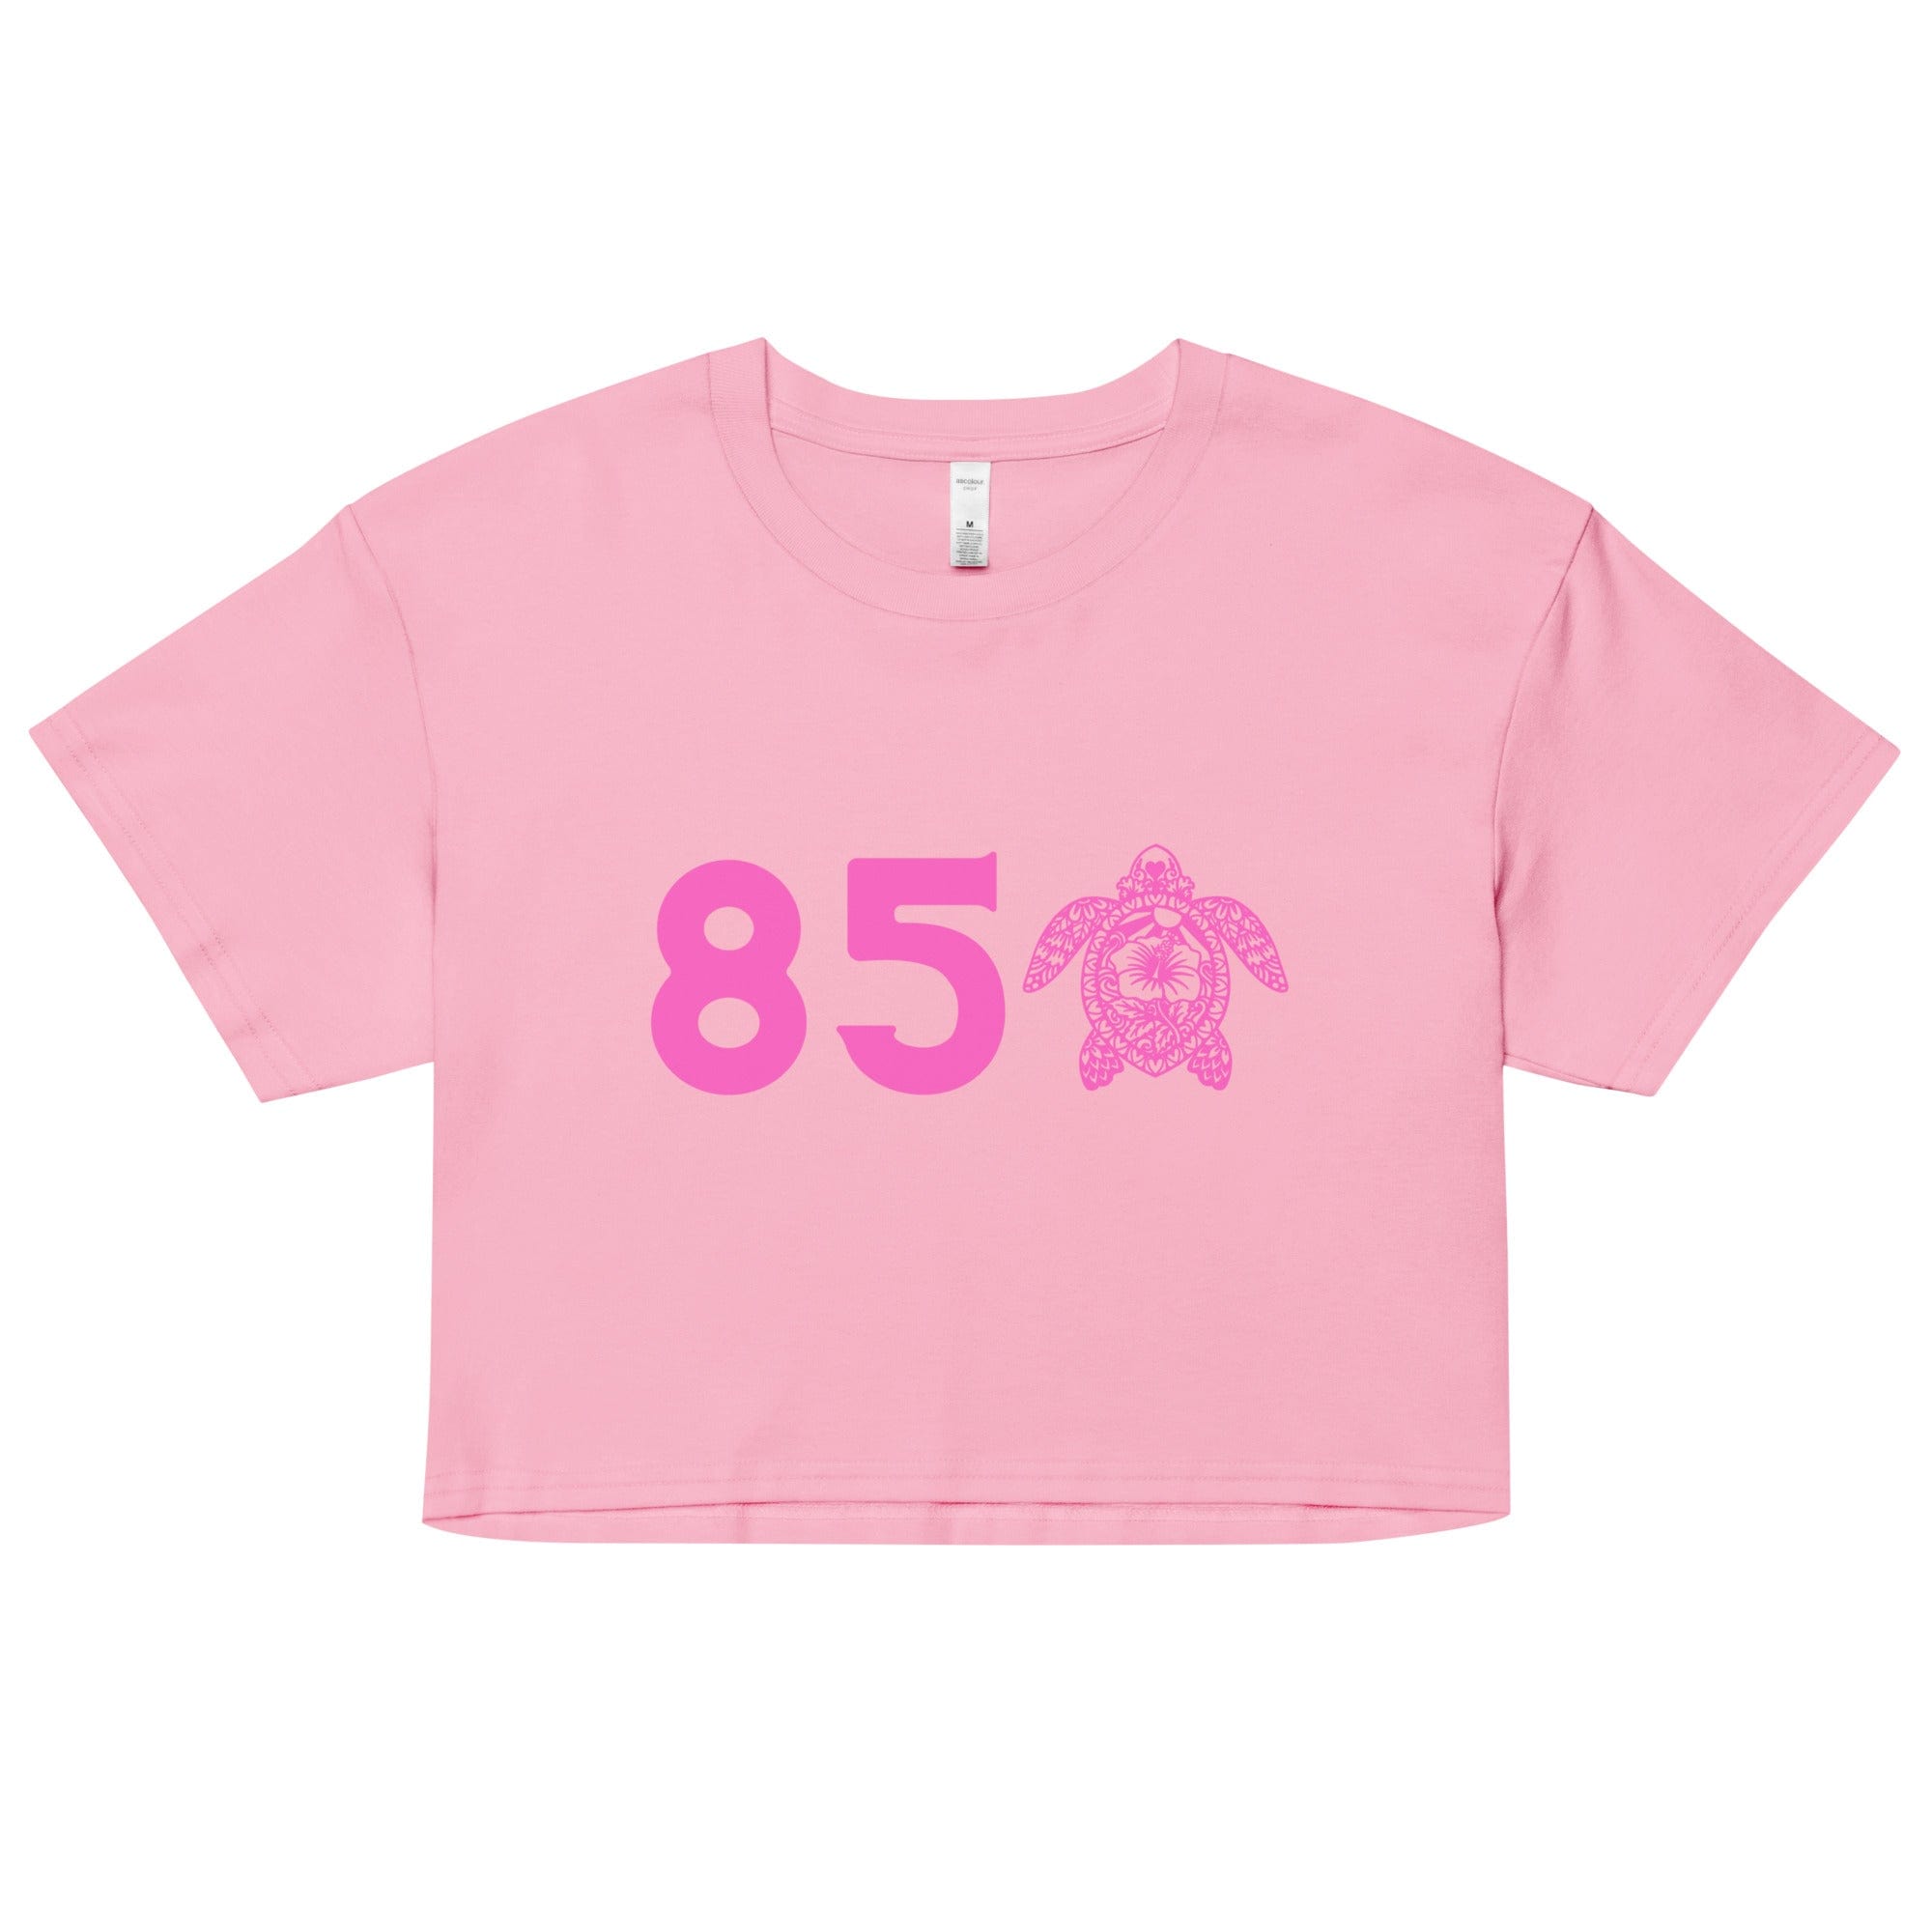 850 Pink Women’s crop top